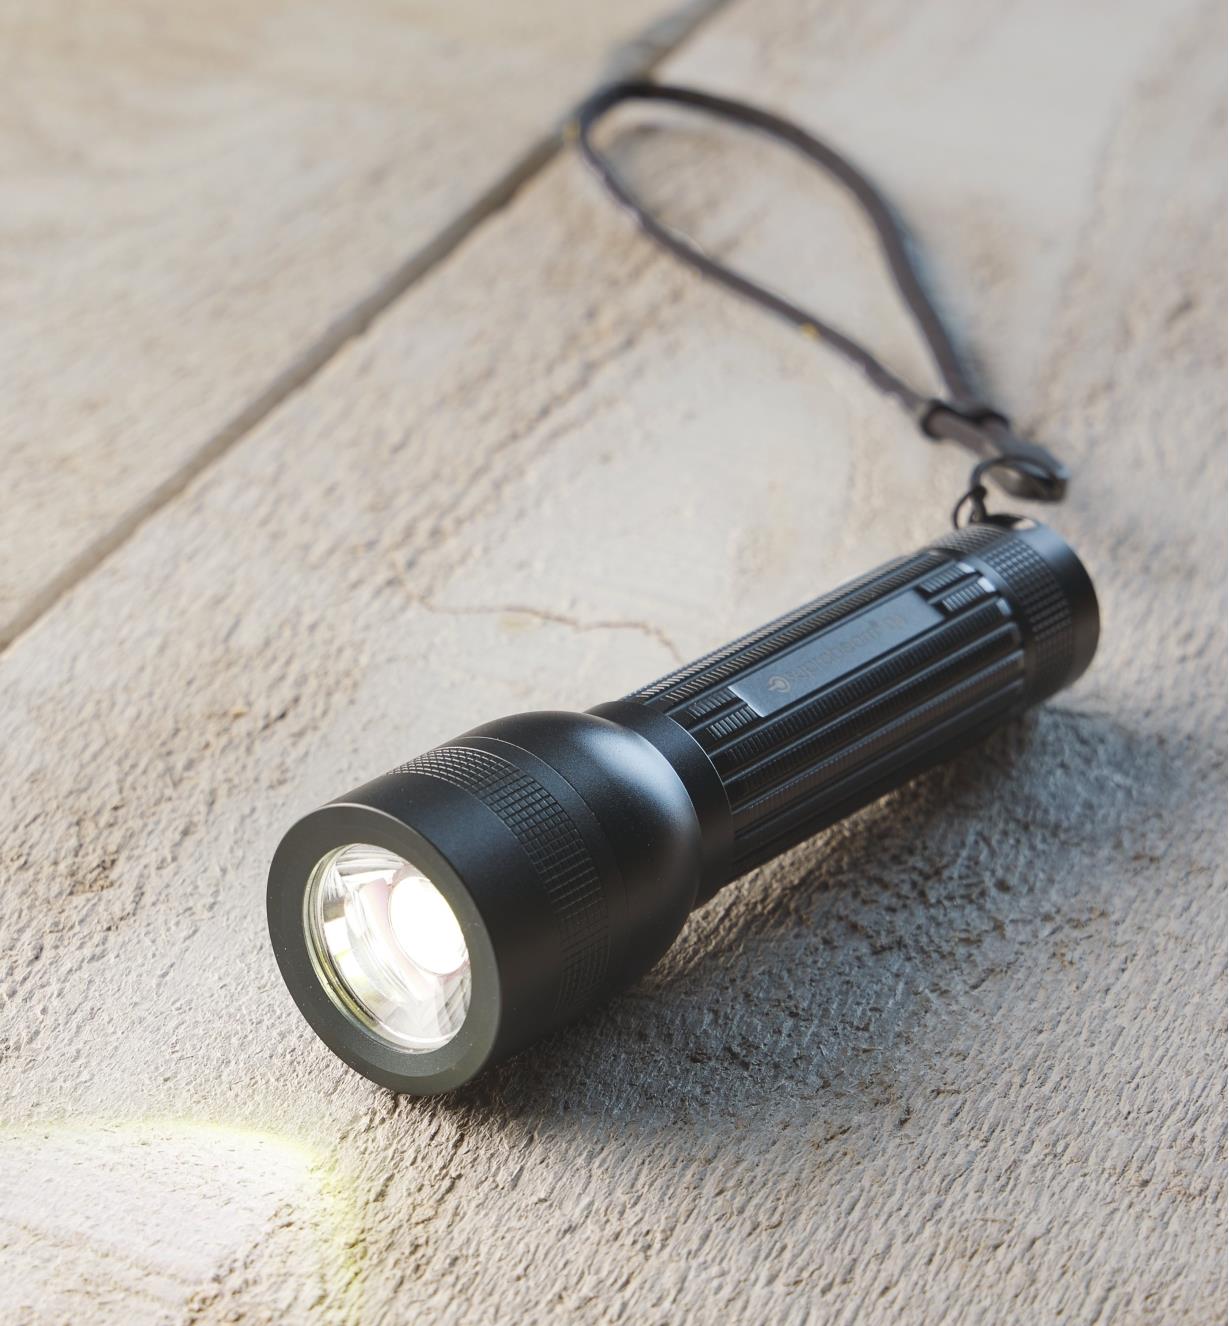 A flashlight lying on a board